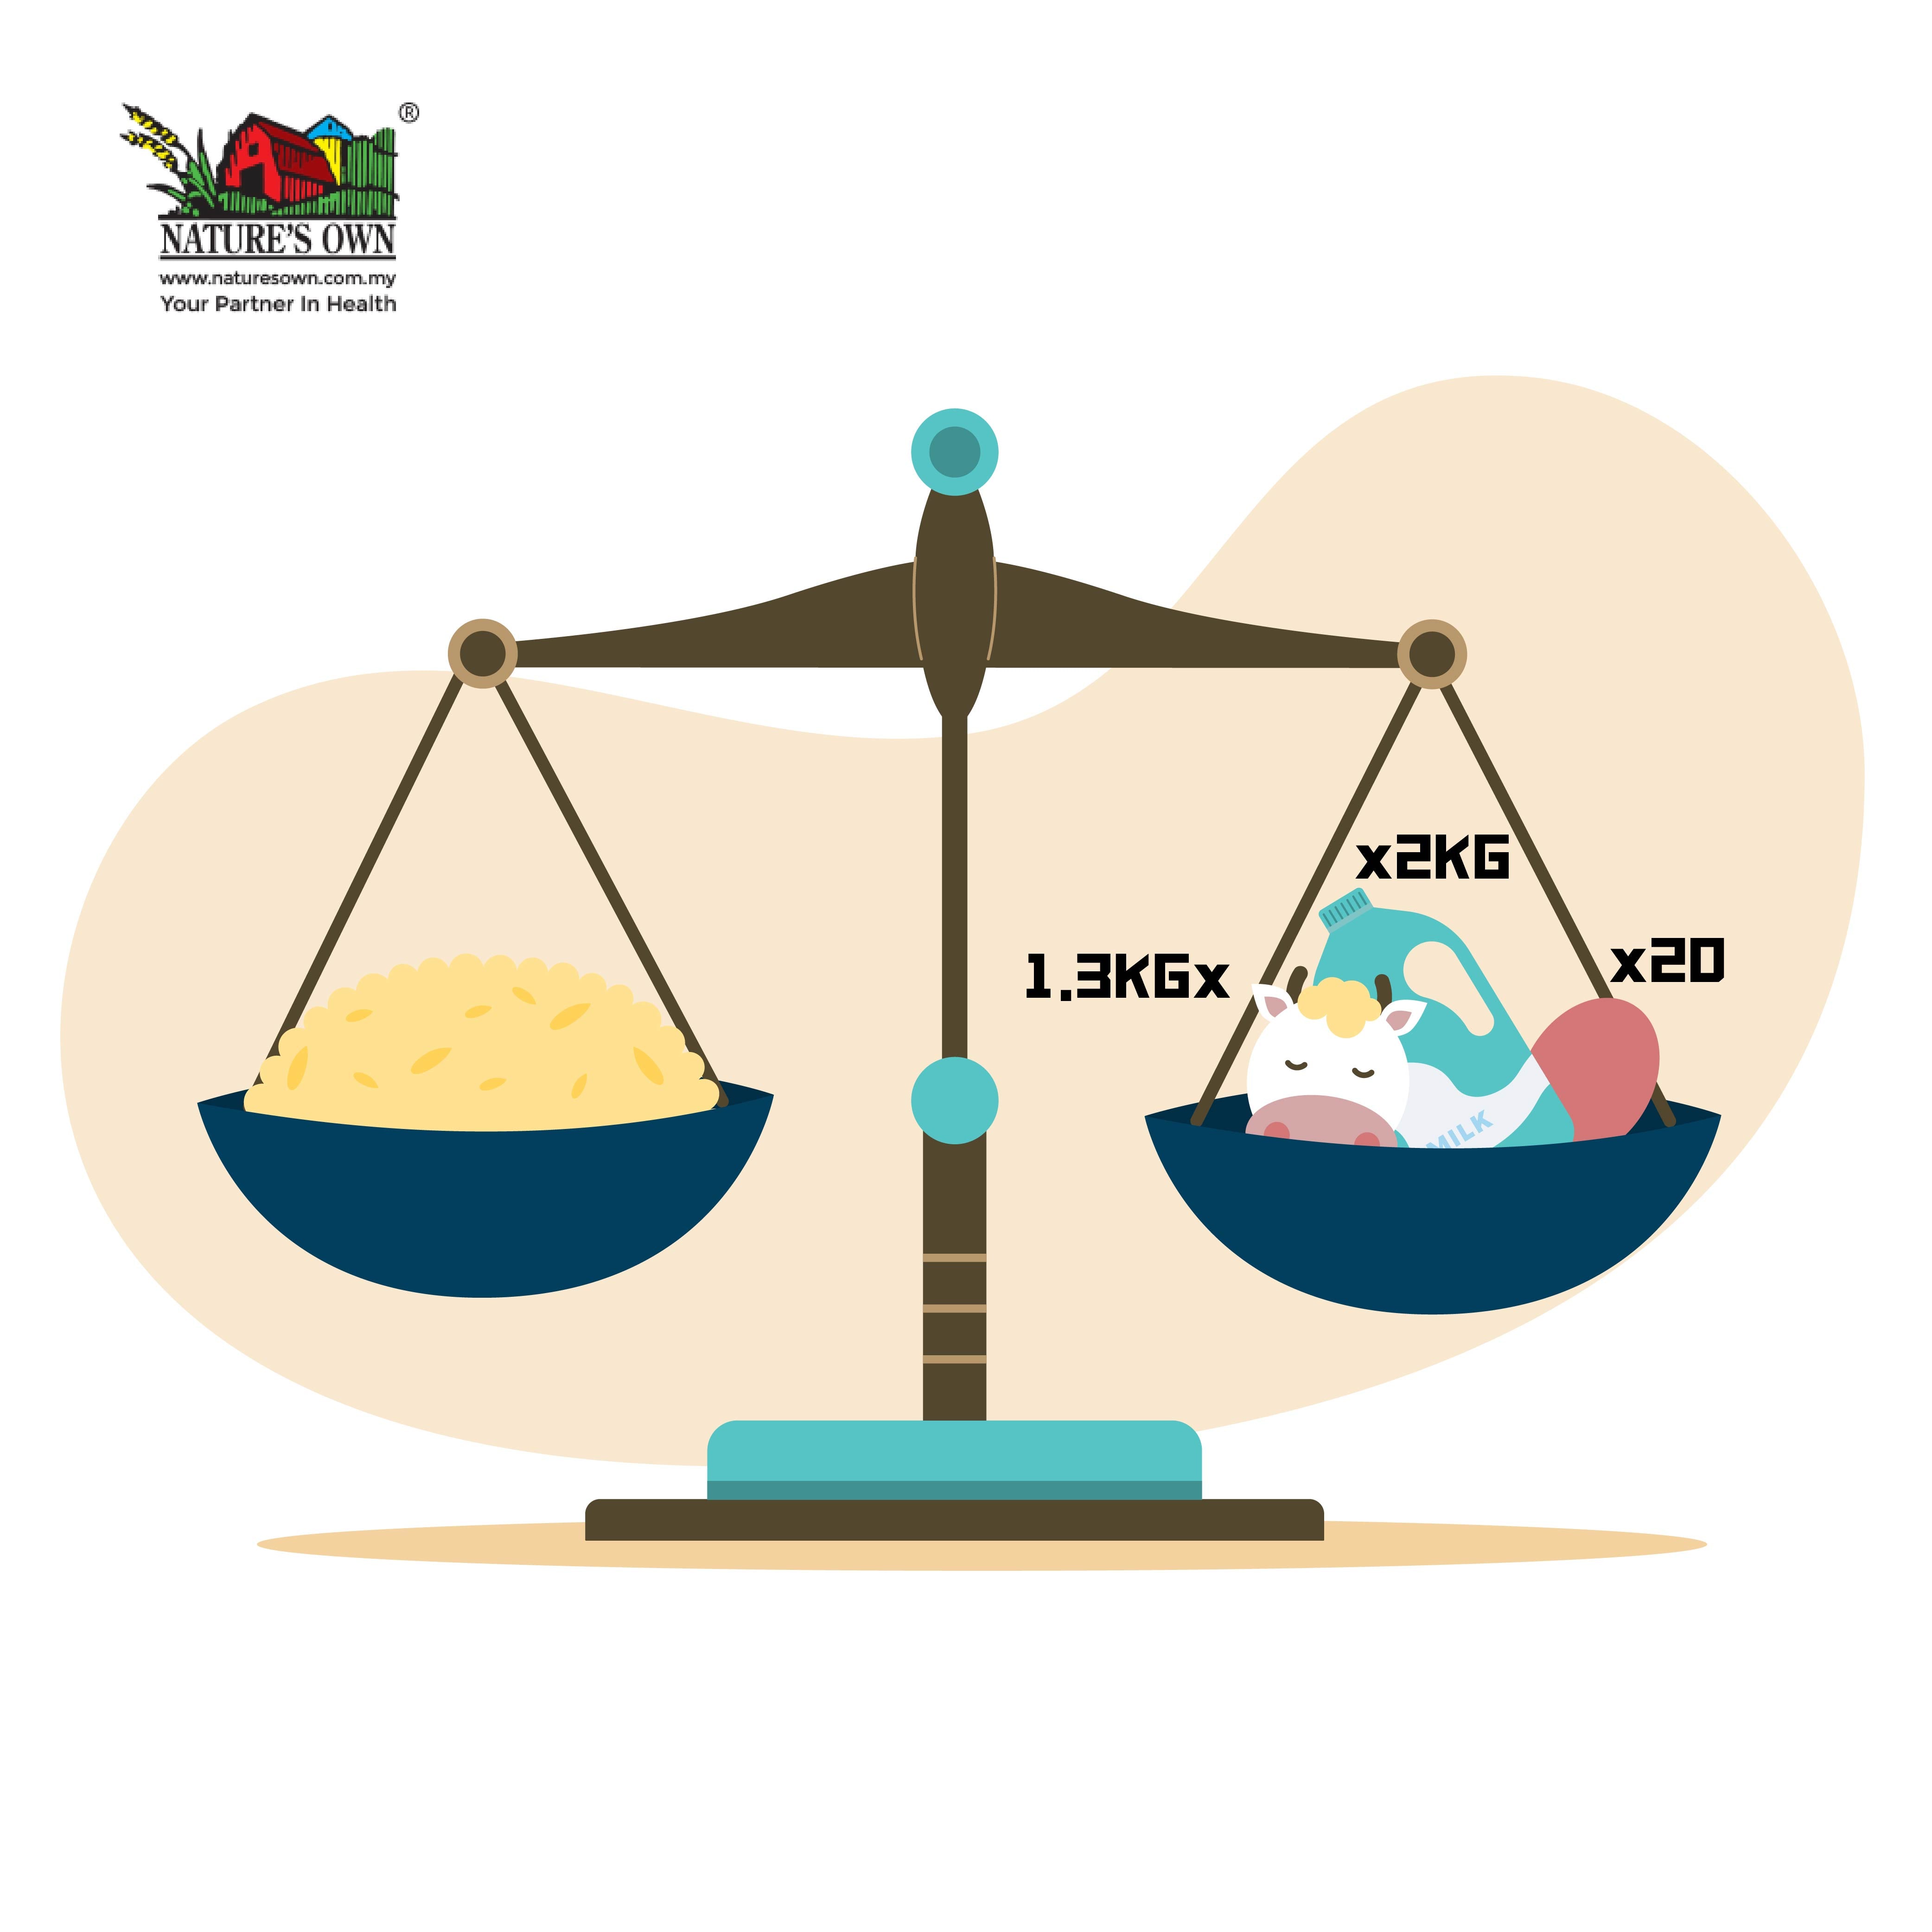 糙米含有大量的维他命B群，想获得与糙米等量的营养需要另外摄取至少2公斤的牛奶，或是20个以上的鸡蛋，或者是1.3公斤的牛肉。